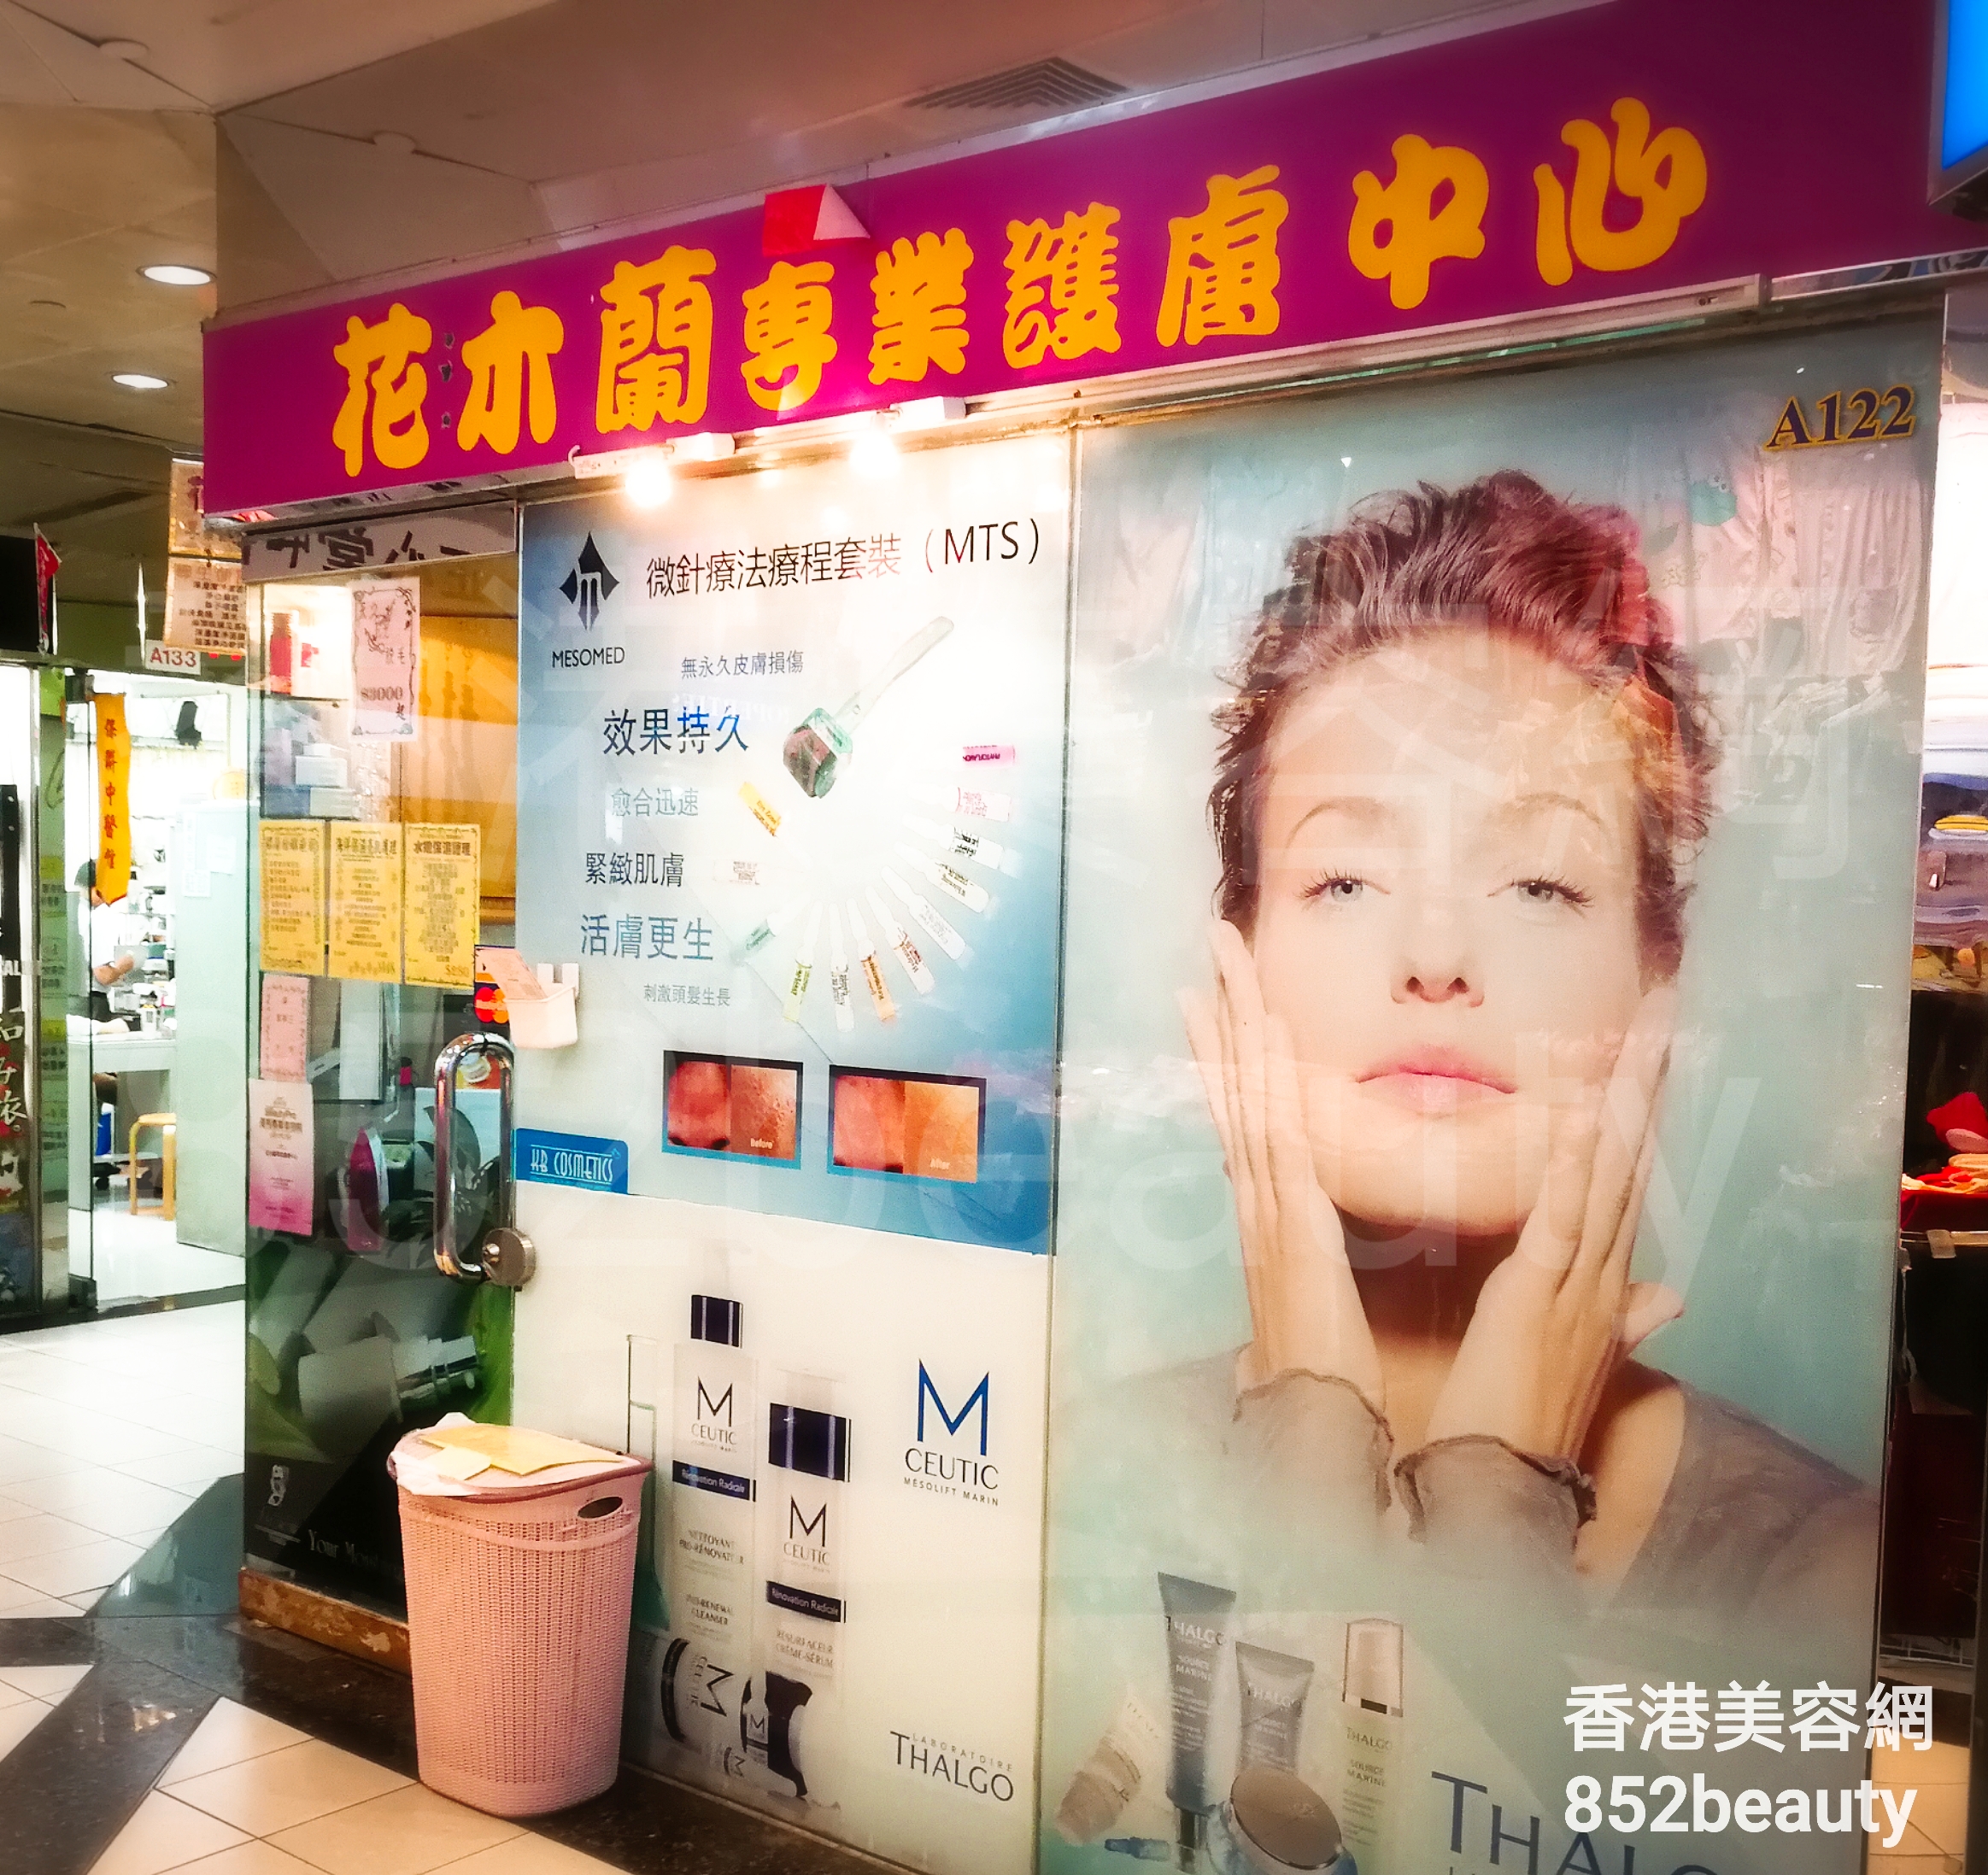 美容院: 花木蘭 專業護膚中心